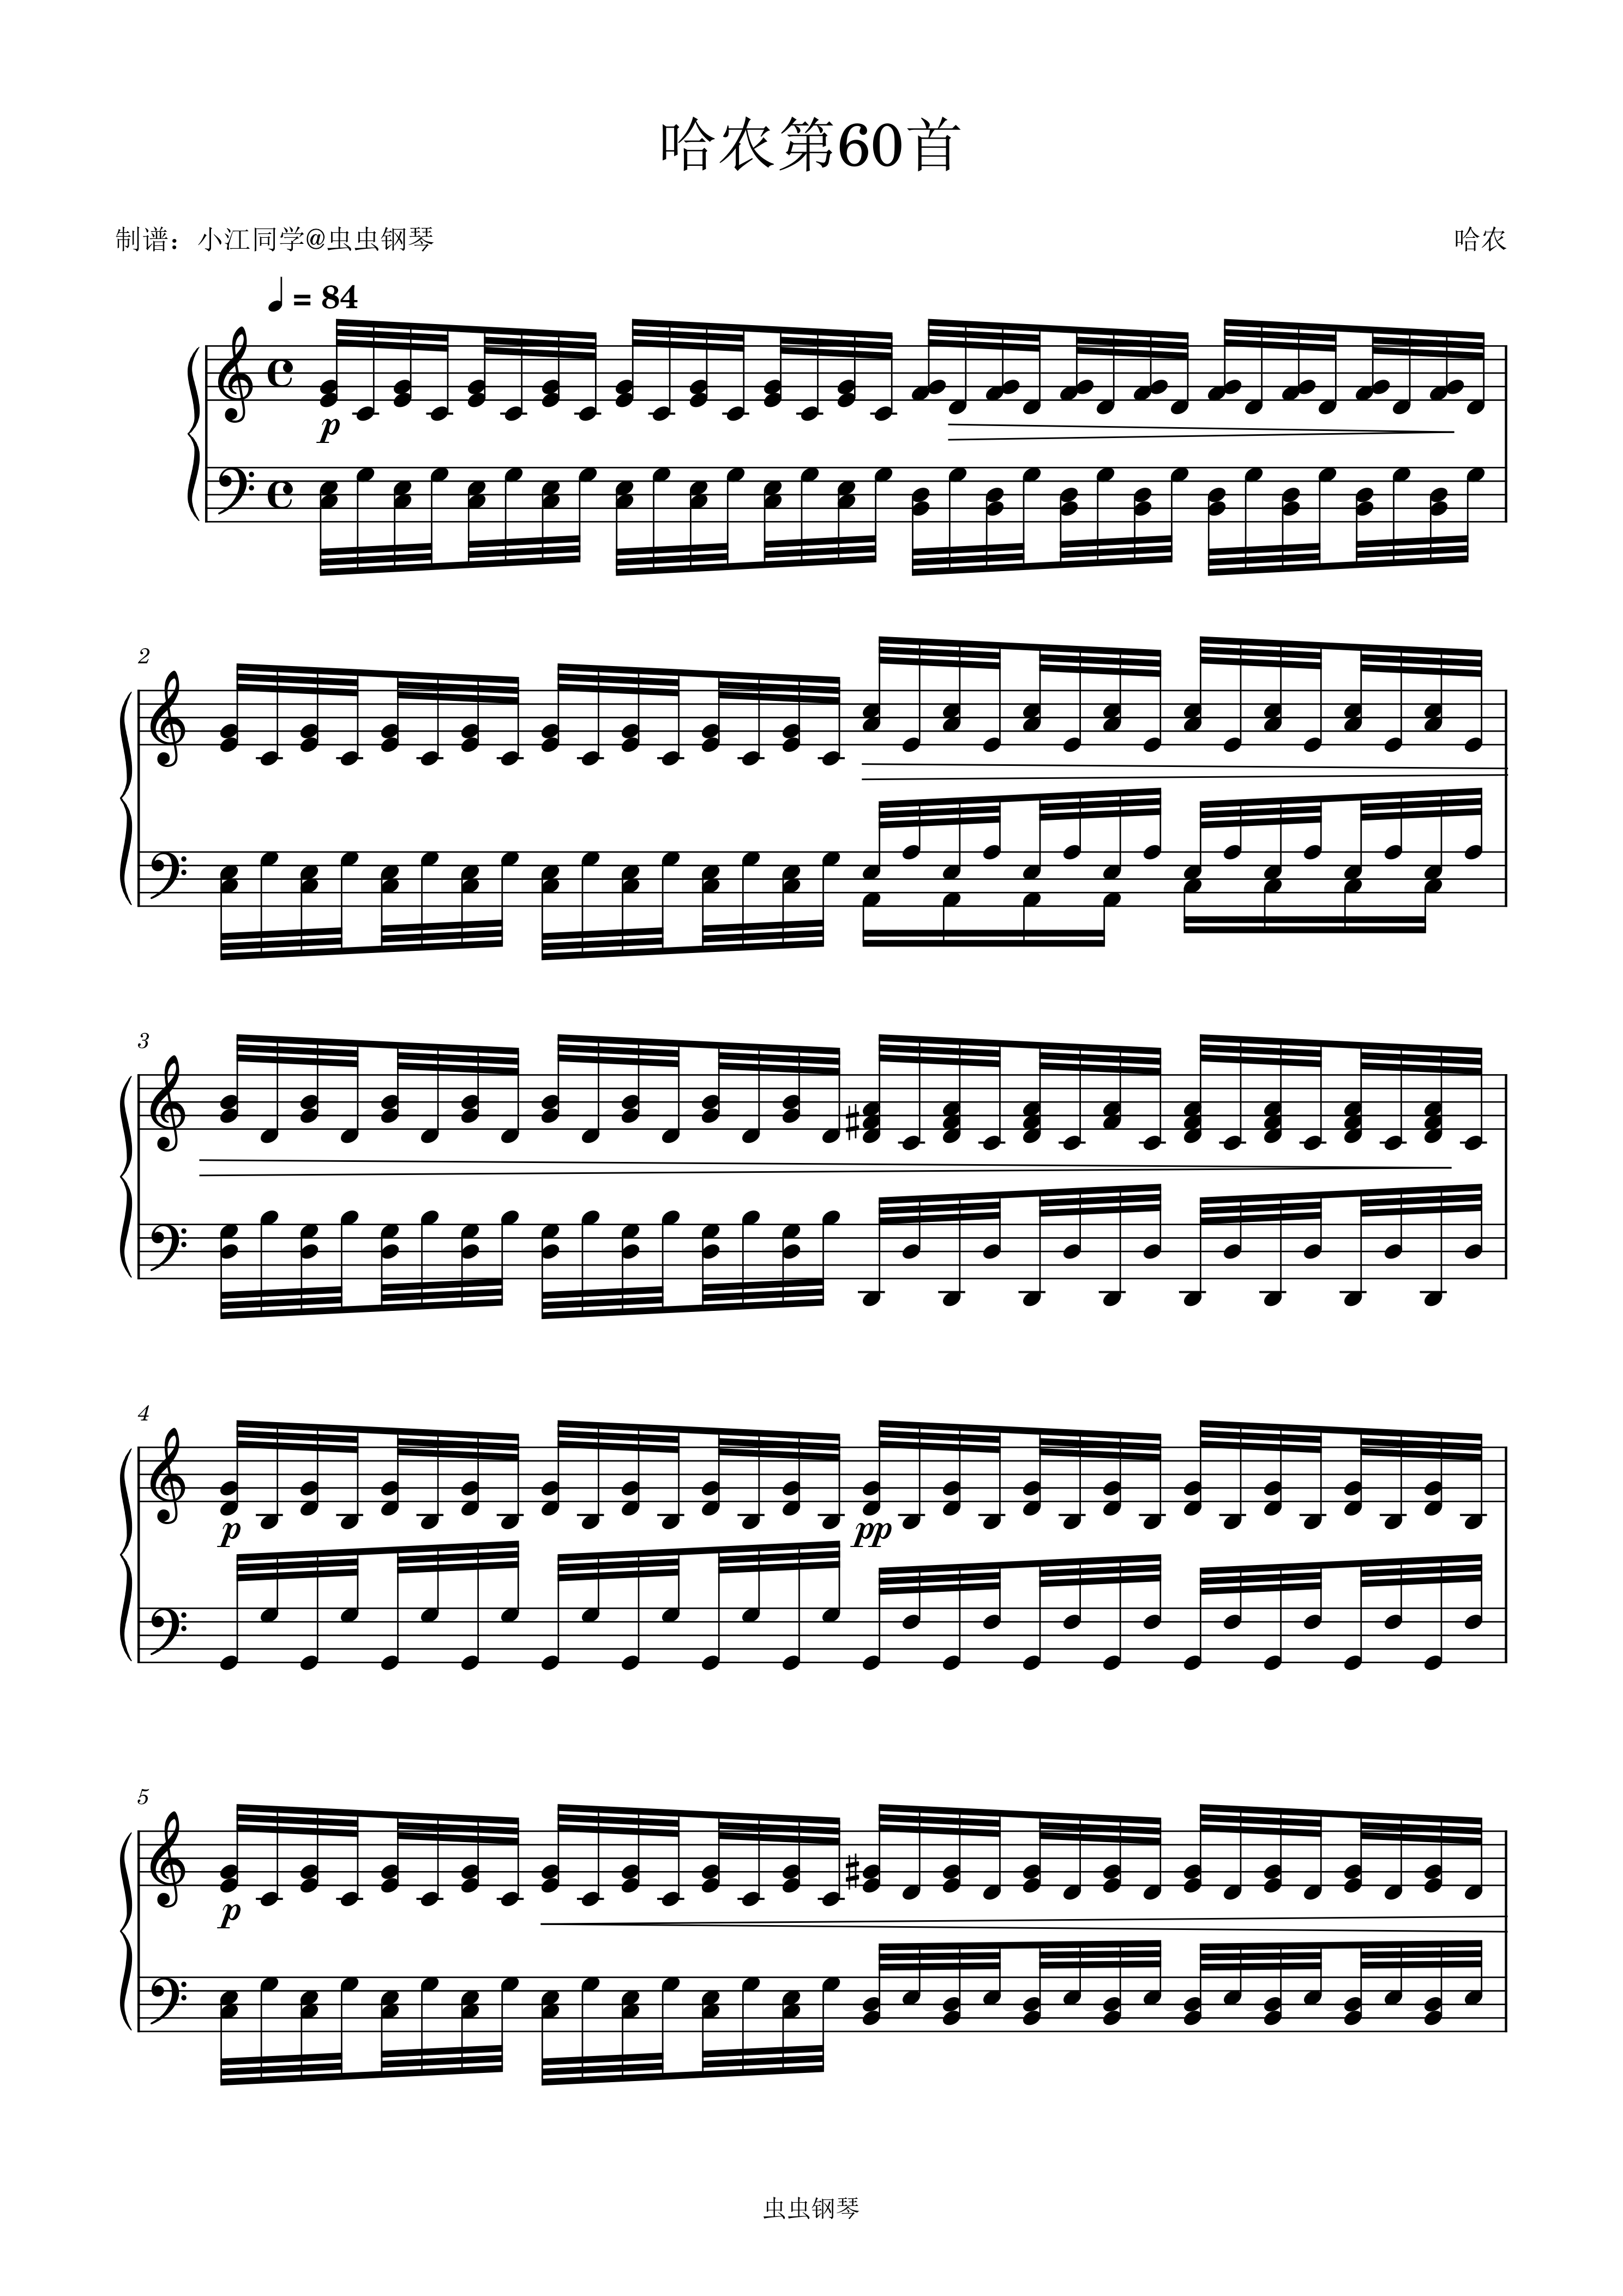 哈农13条钢琴谱简谱图片